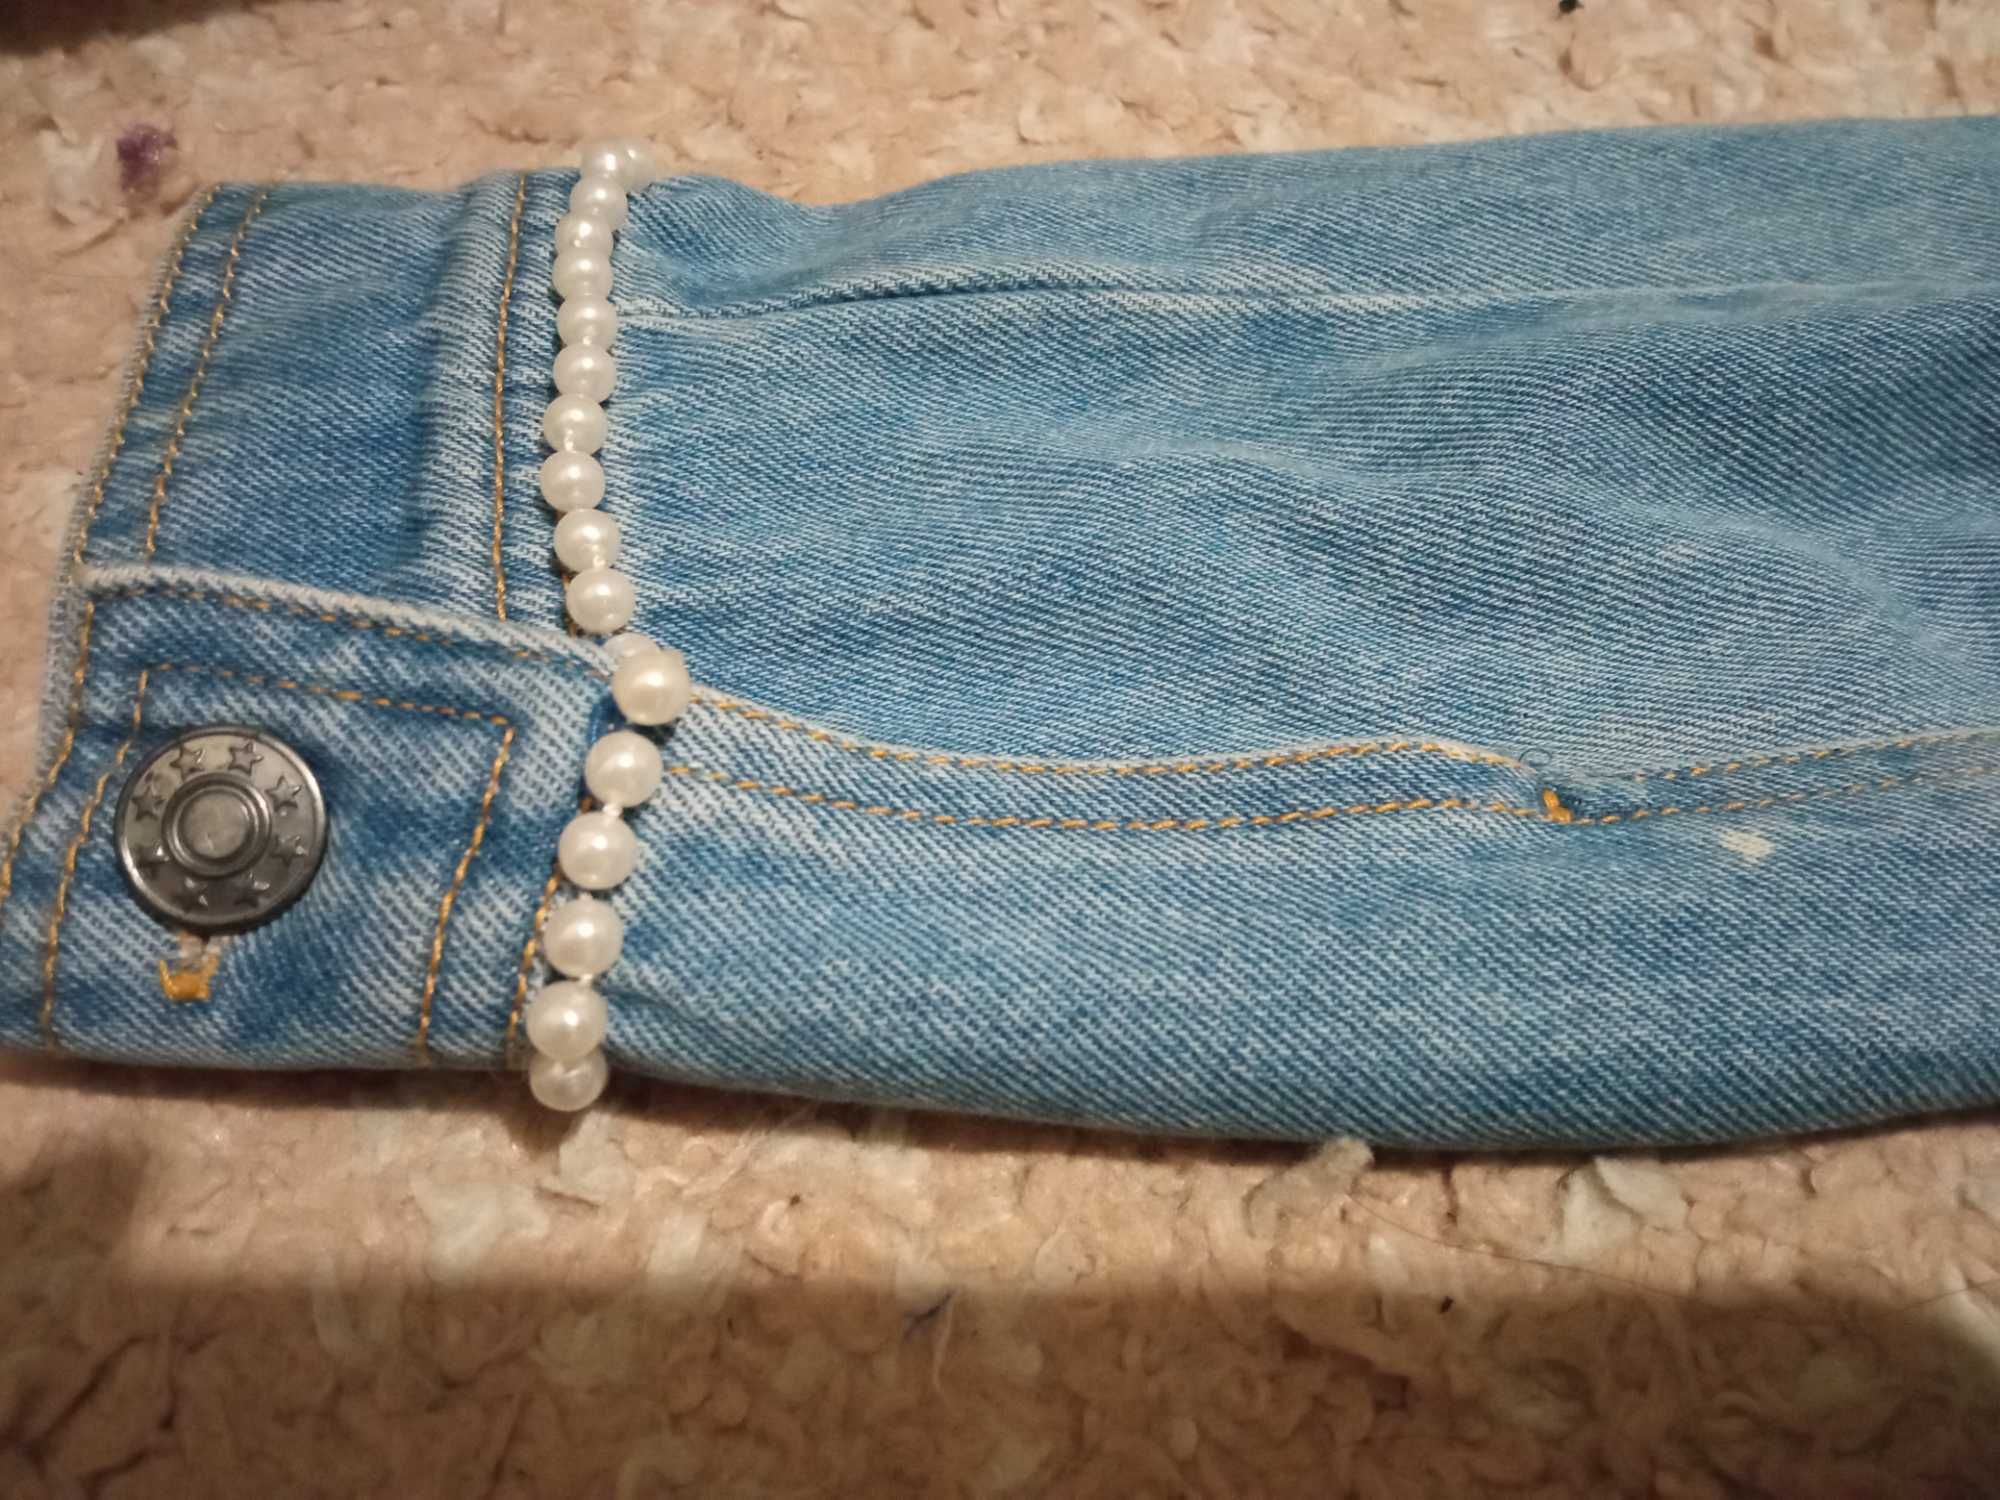 Simply the best Kurtka jeansowa katana perełki z perełkami 36 S